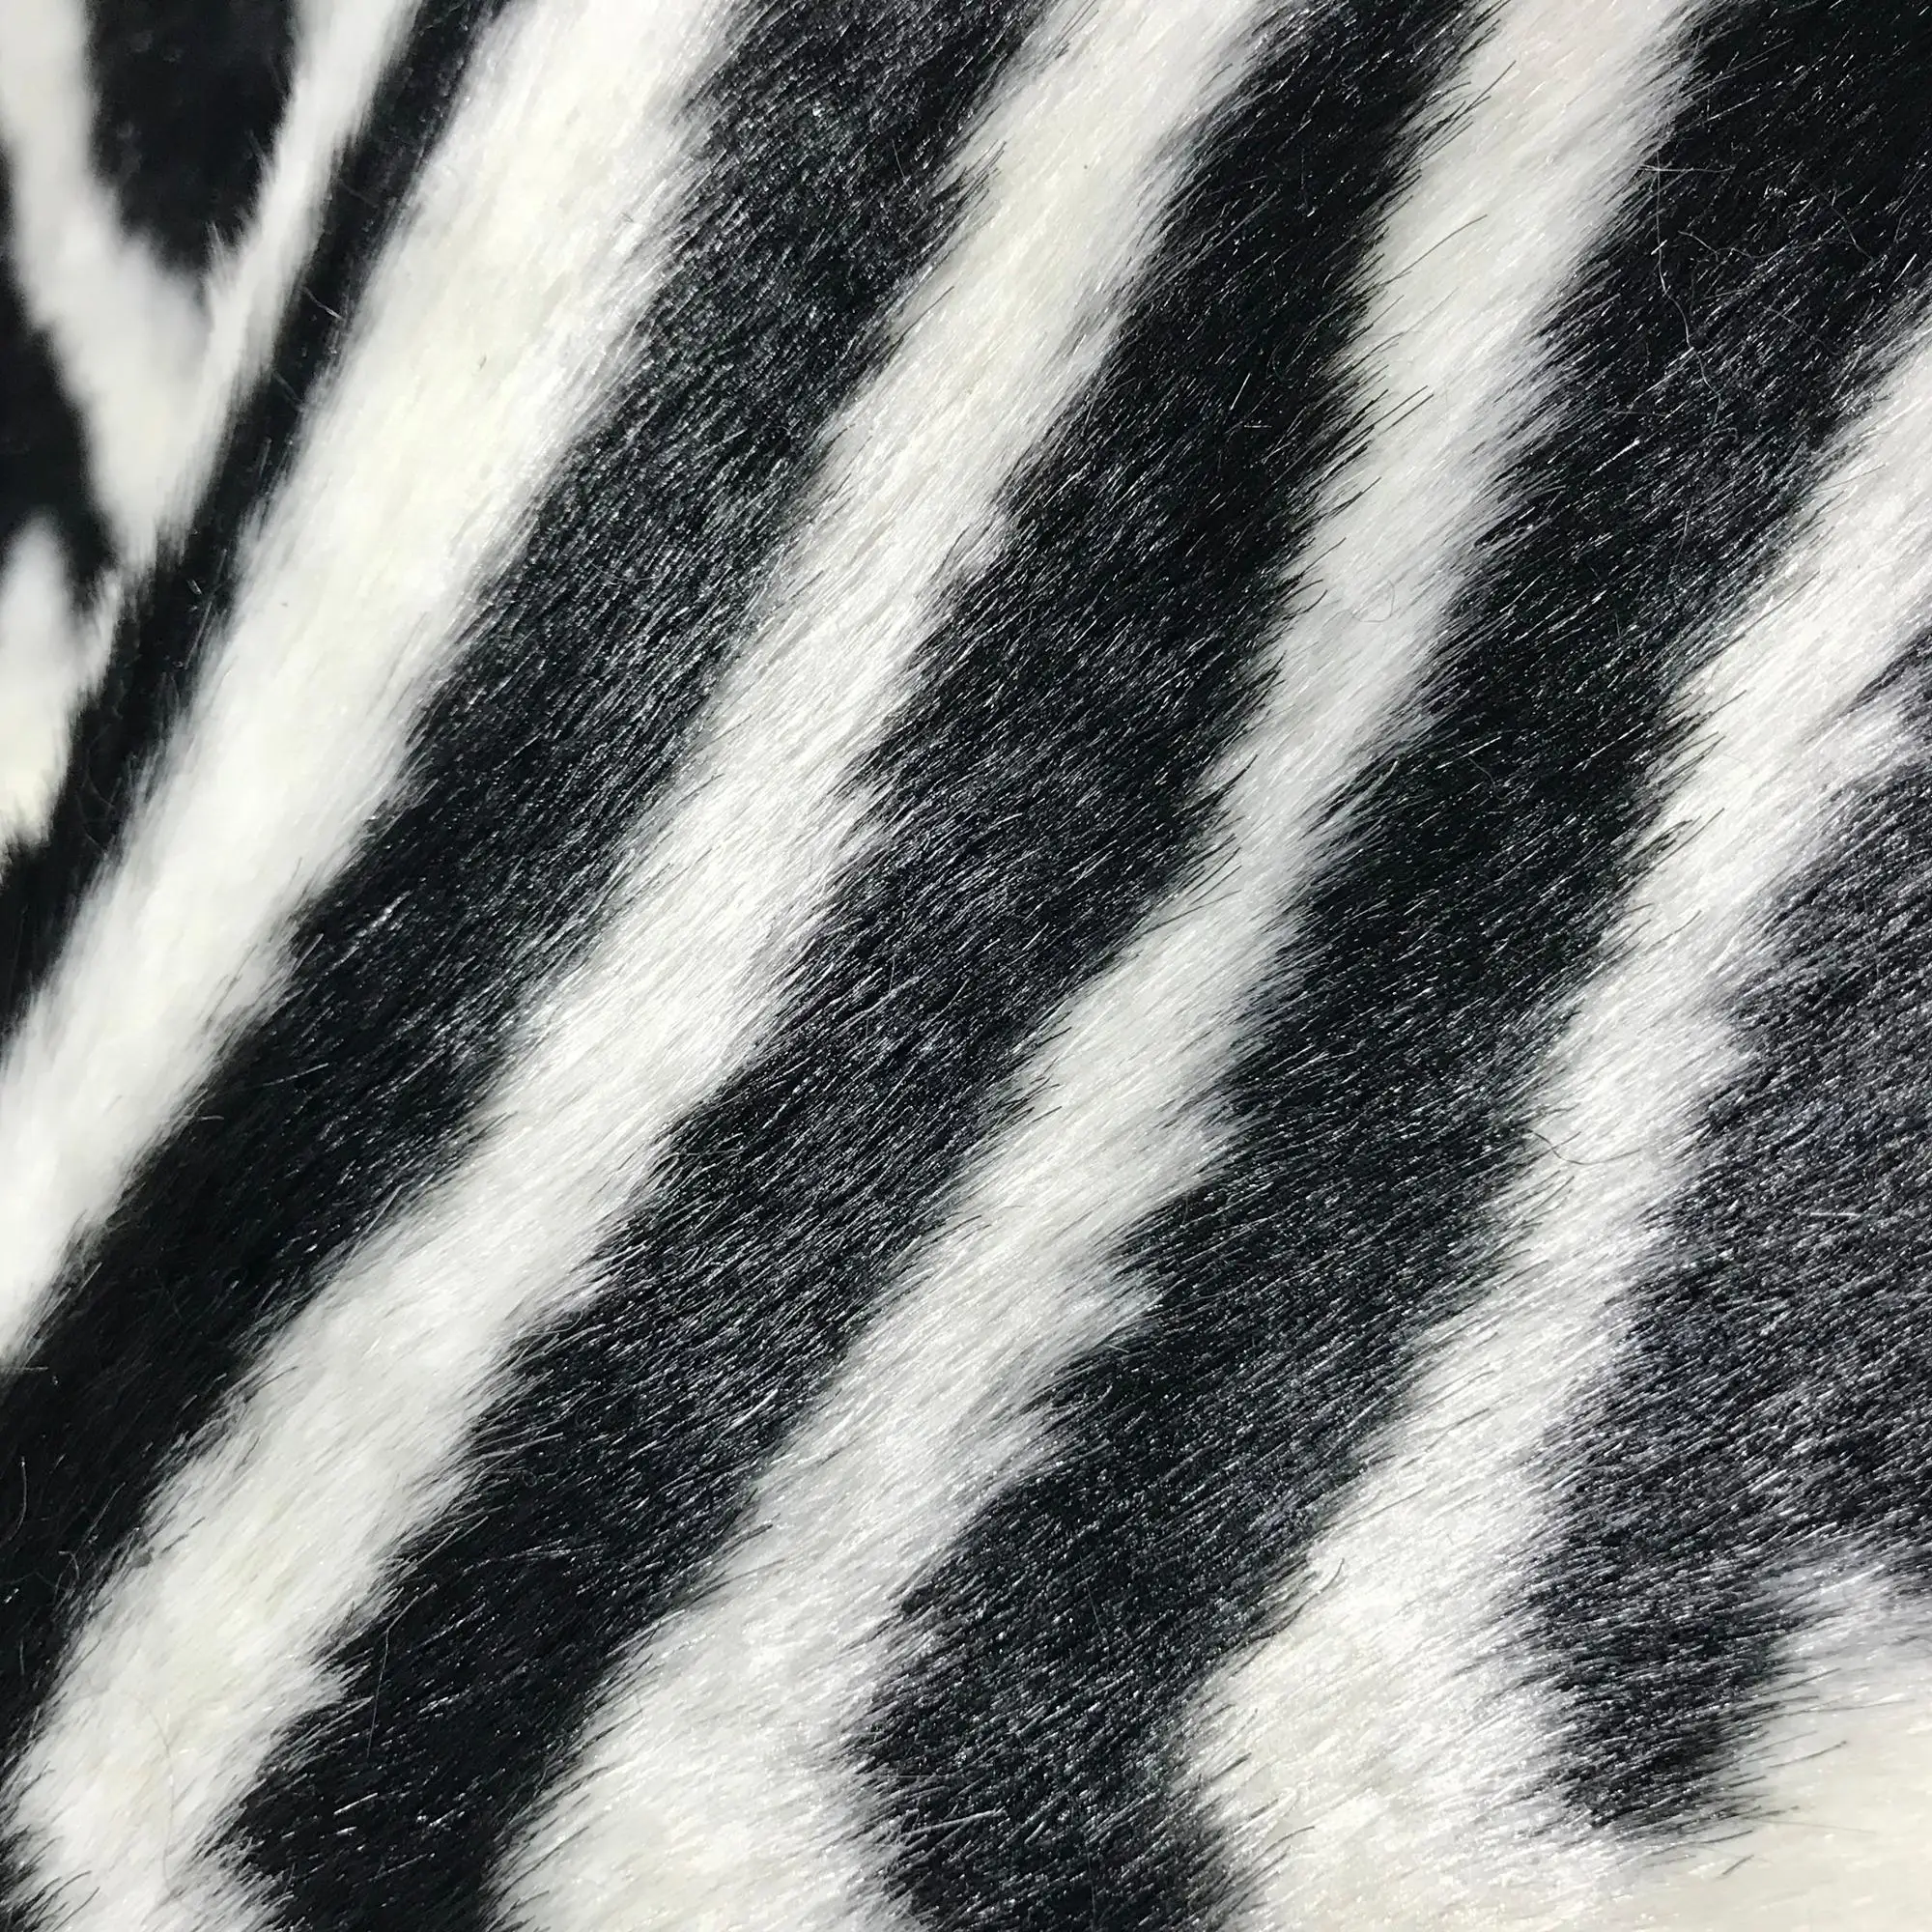 furry zebra rug